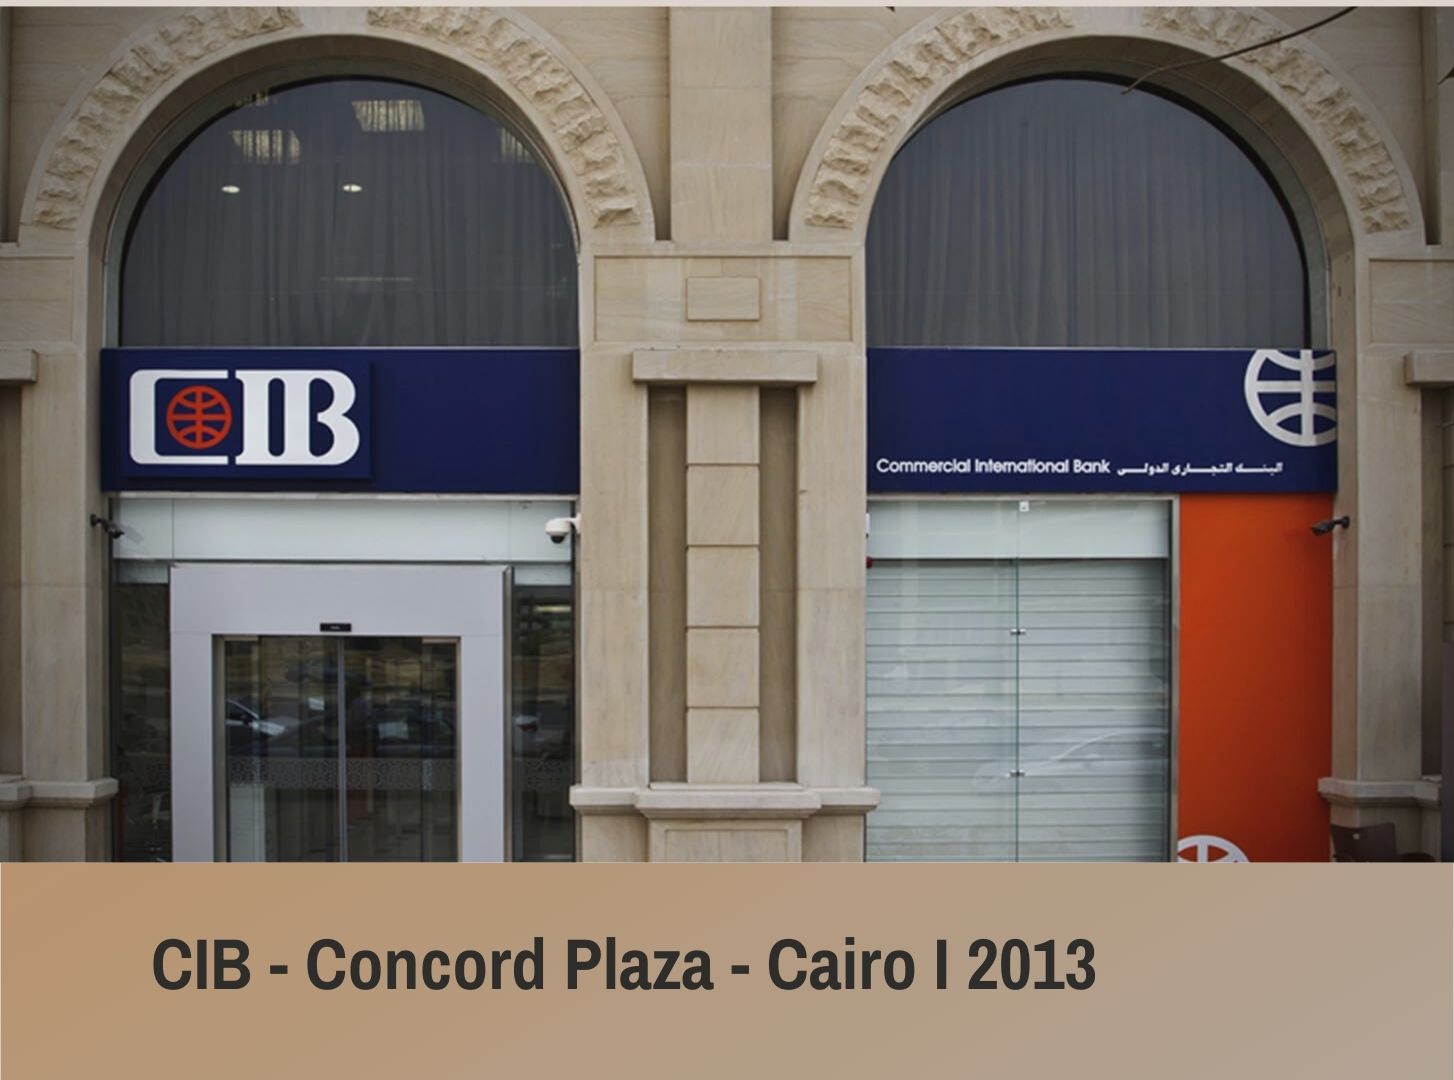 CIB - Concord Plaza